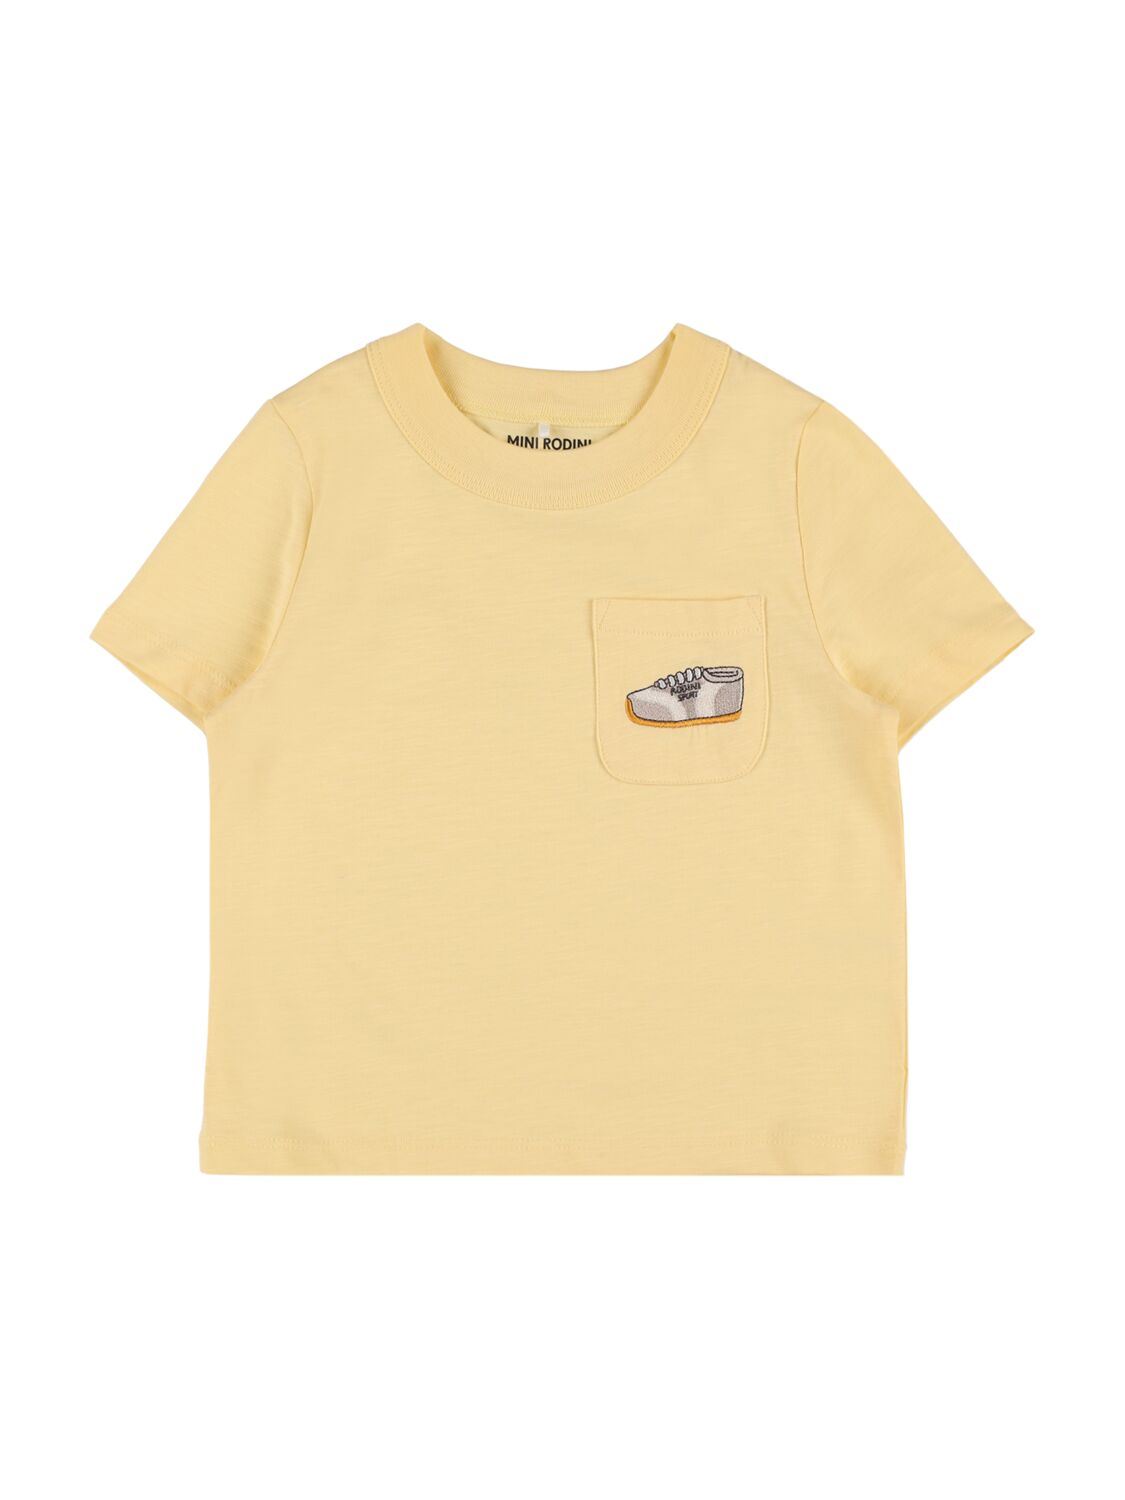 Mini Rodini Babies' 刺绣棉质t恤 In Yellow